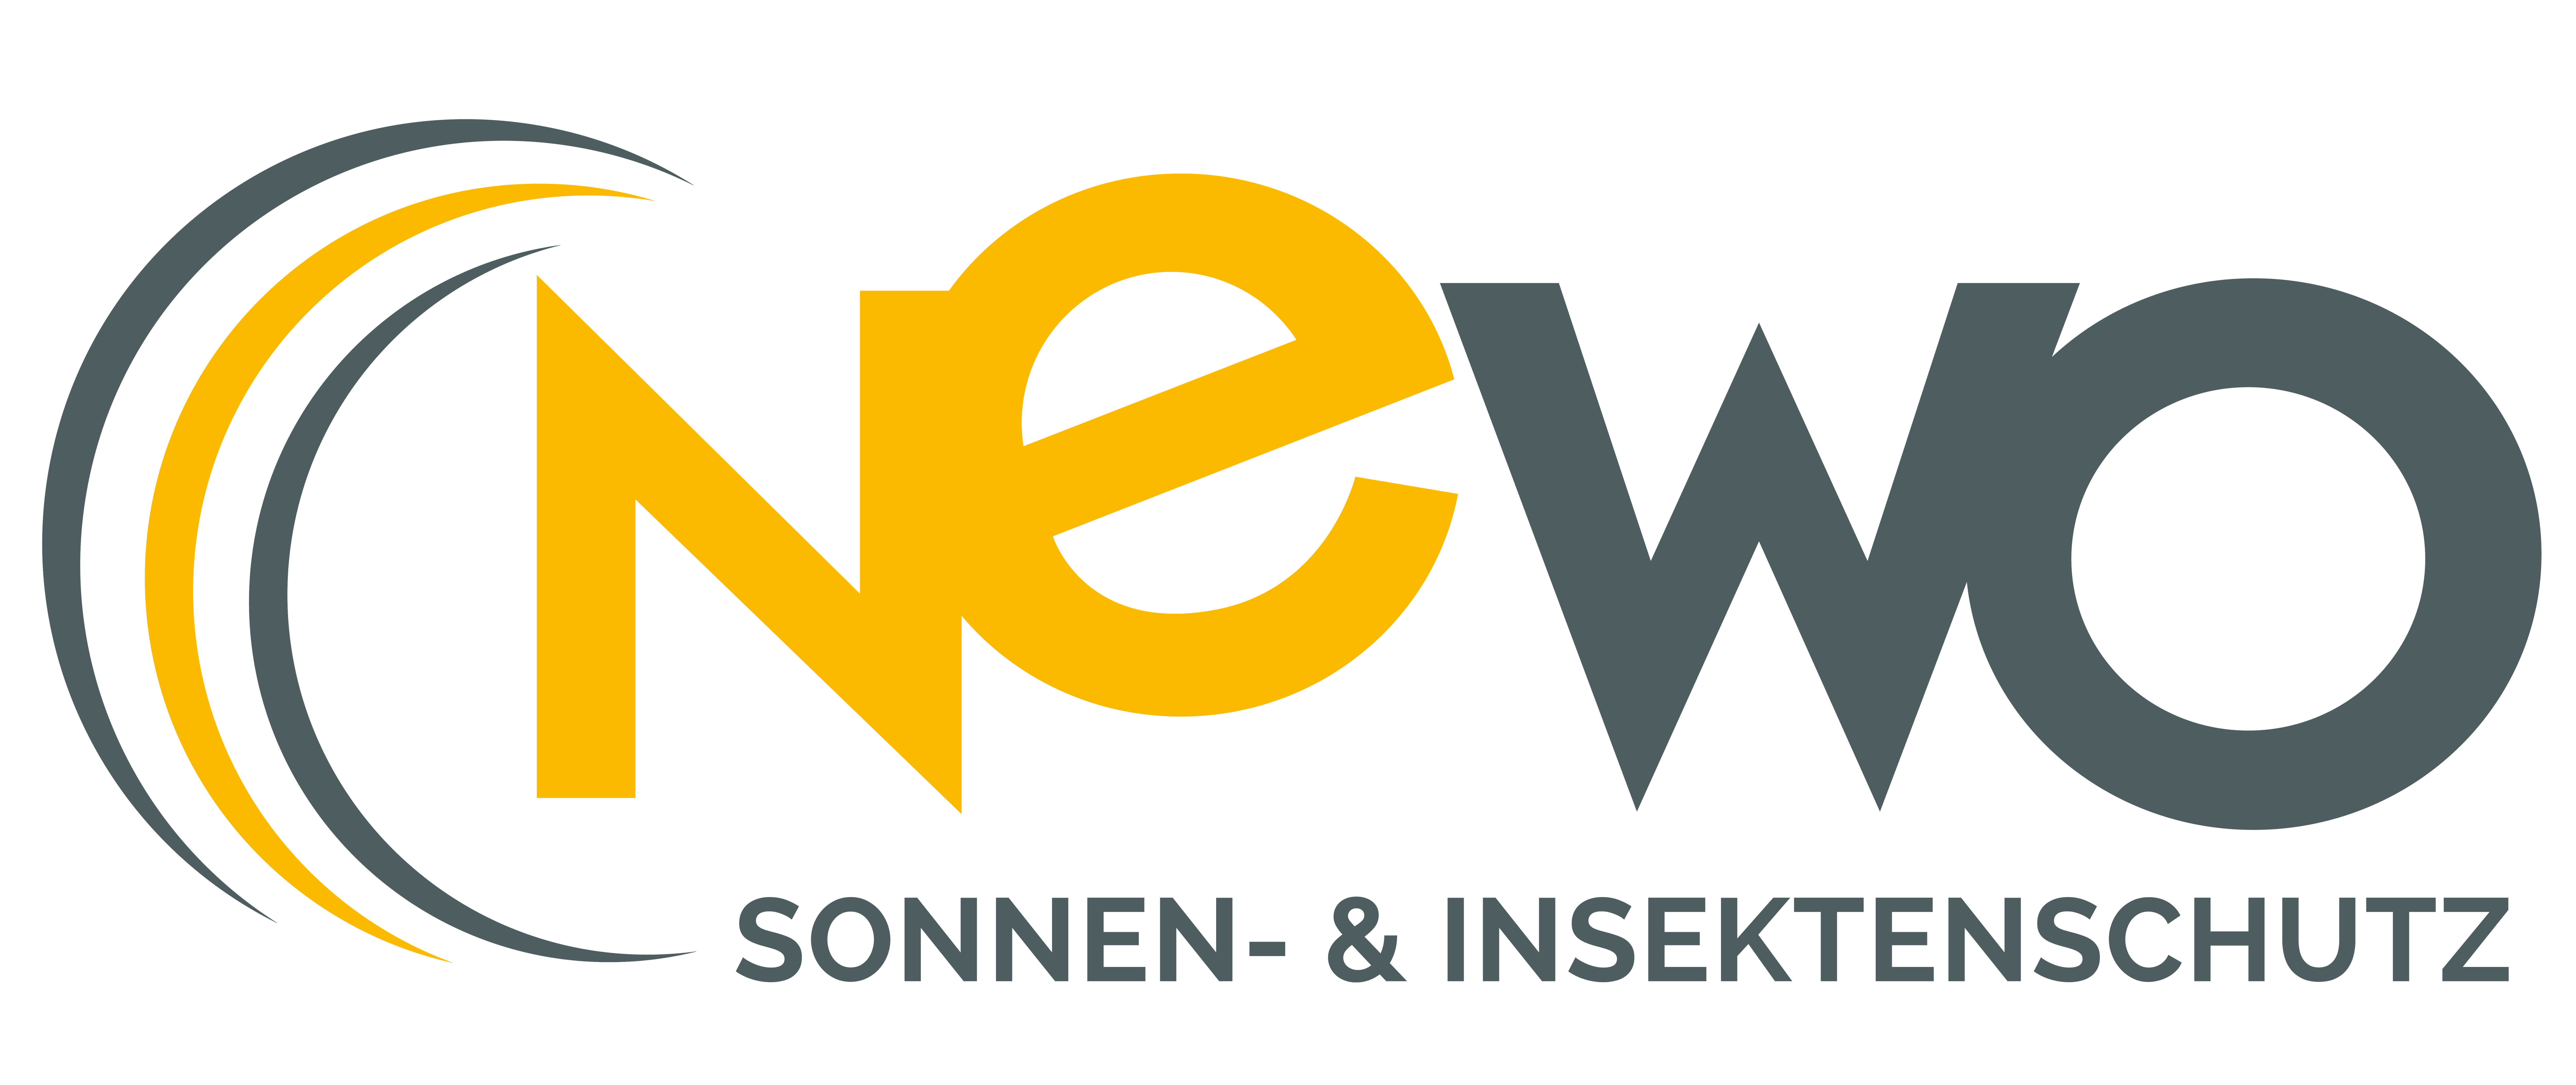 Newo Sonnen- & Insektenschutz